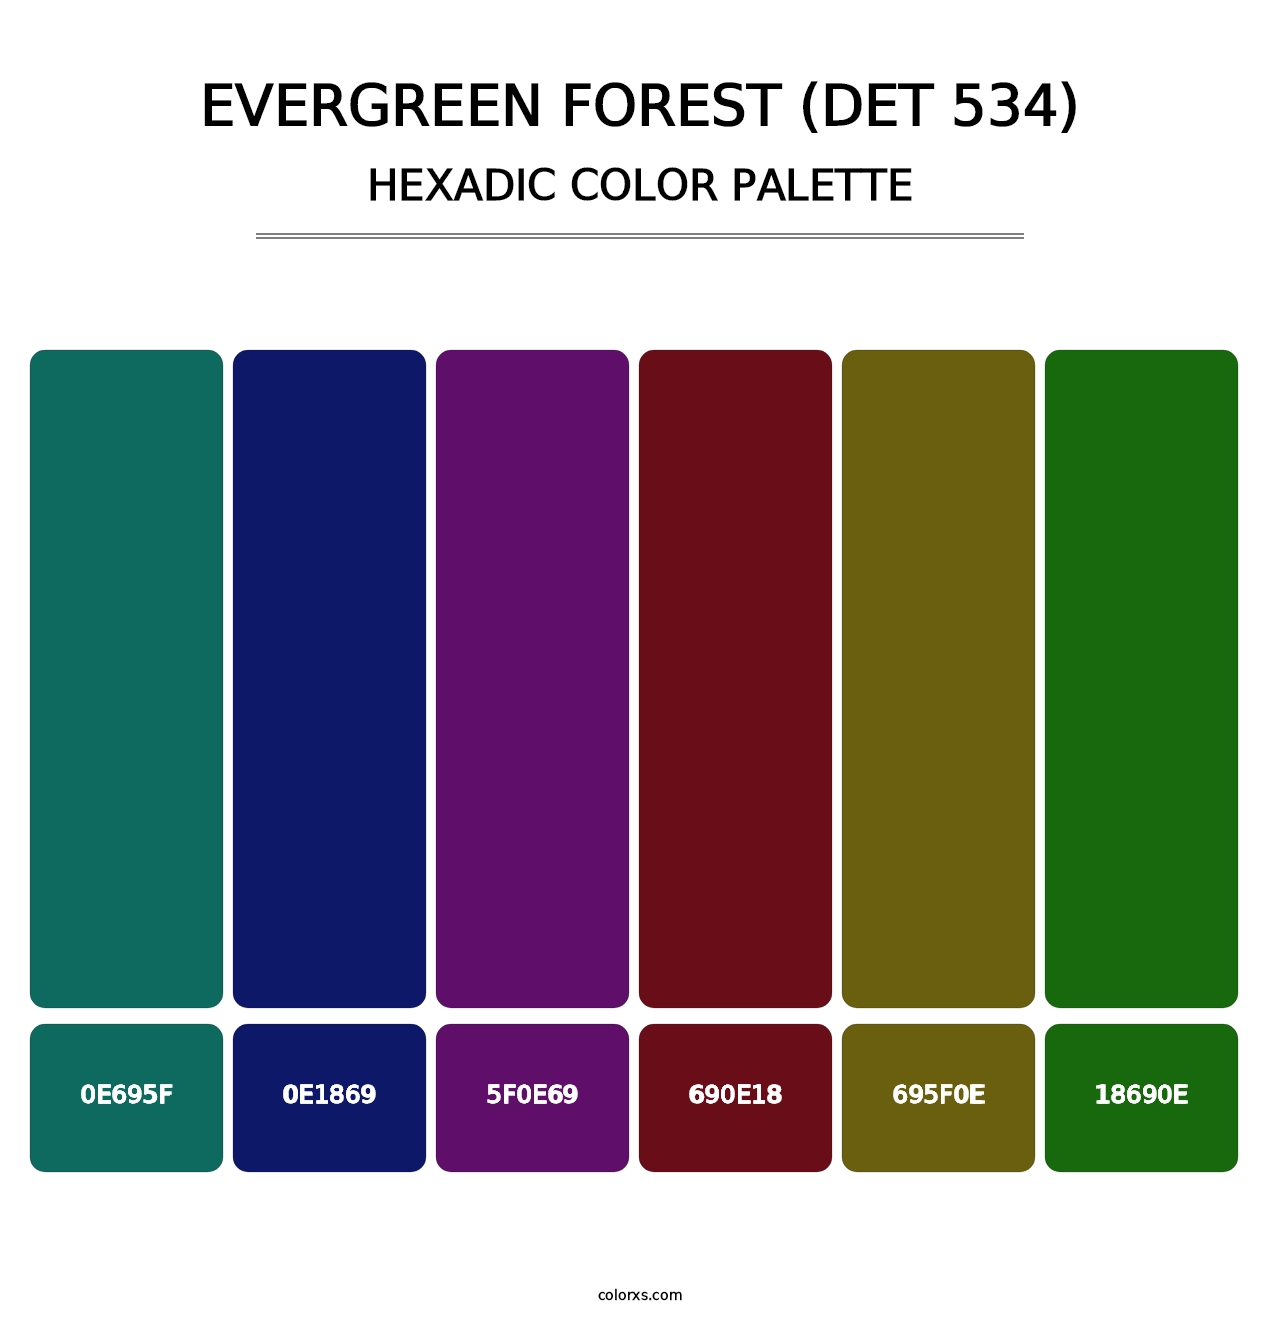 Evergreen Forest (DET 534) - Hexadic Color Palette